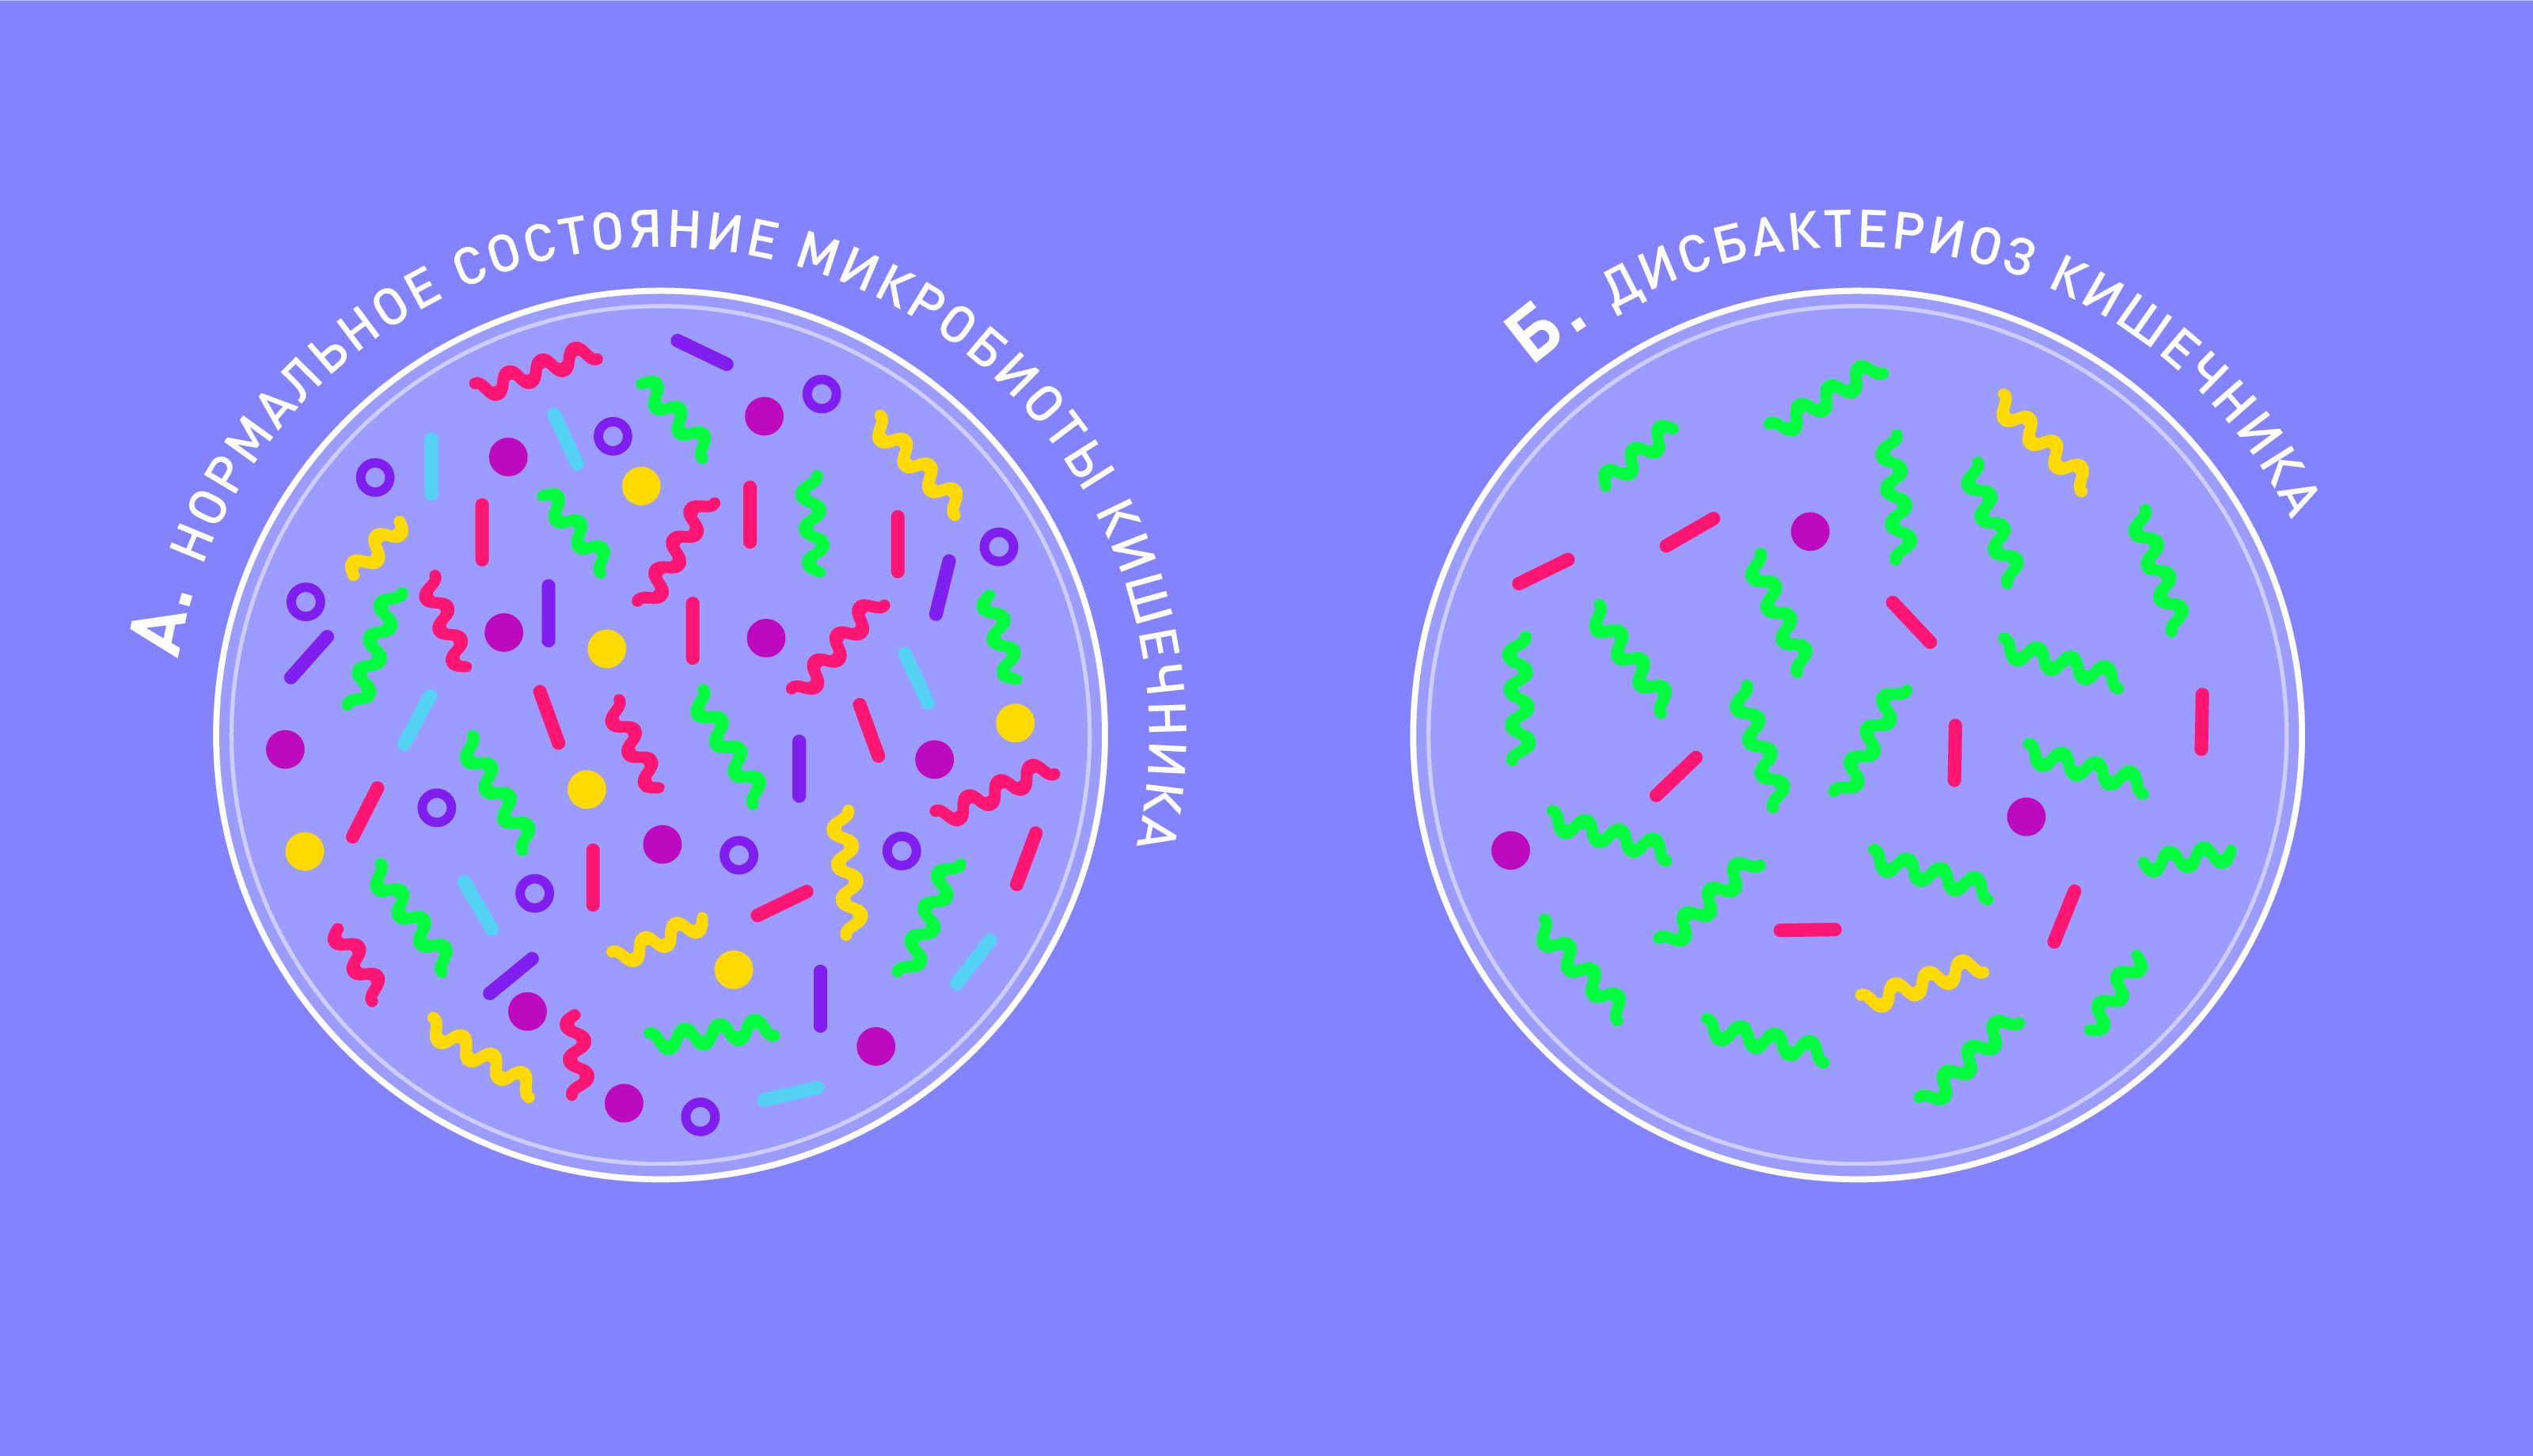 Дисбактериоз кишечника: симптомы, причины, состояние микробиоты